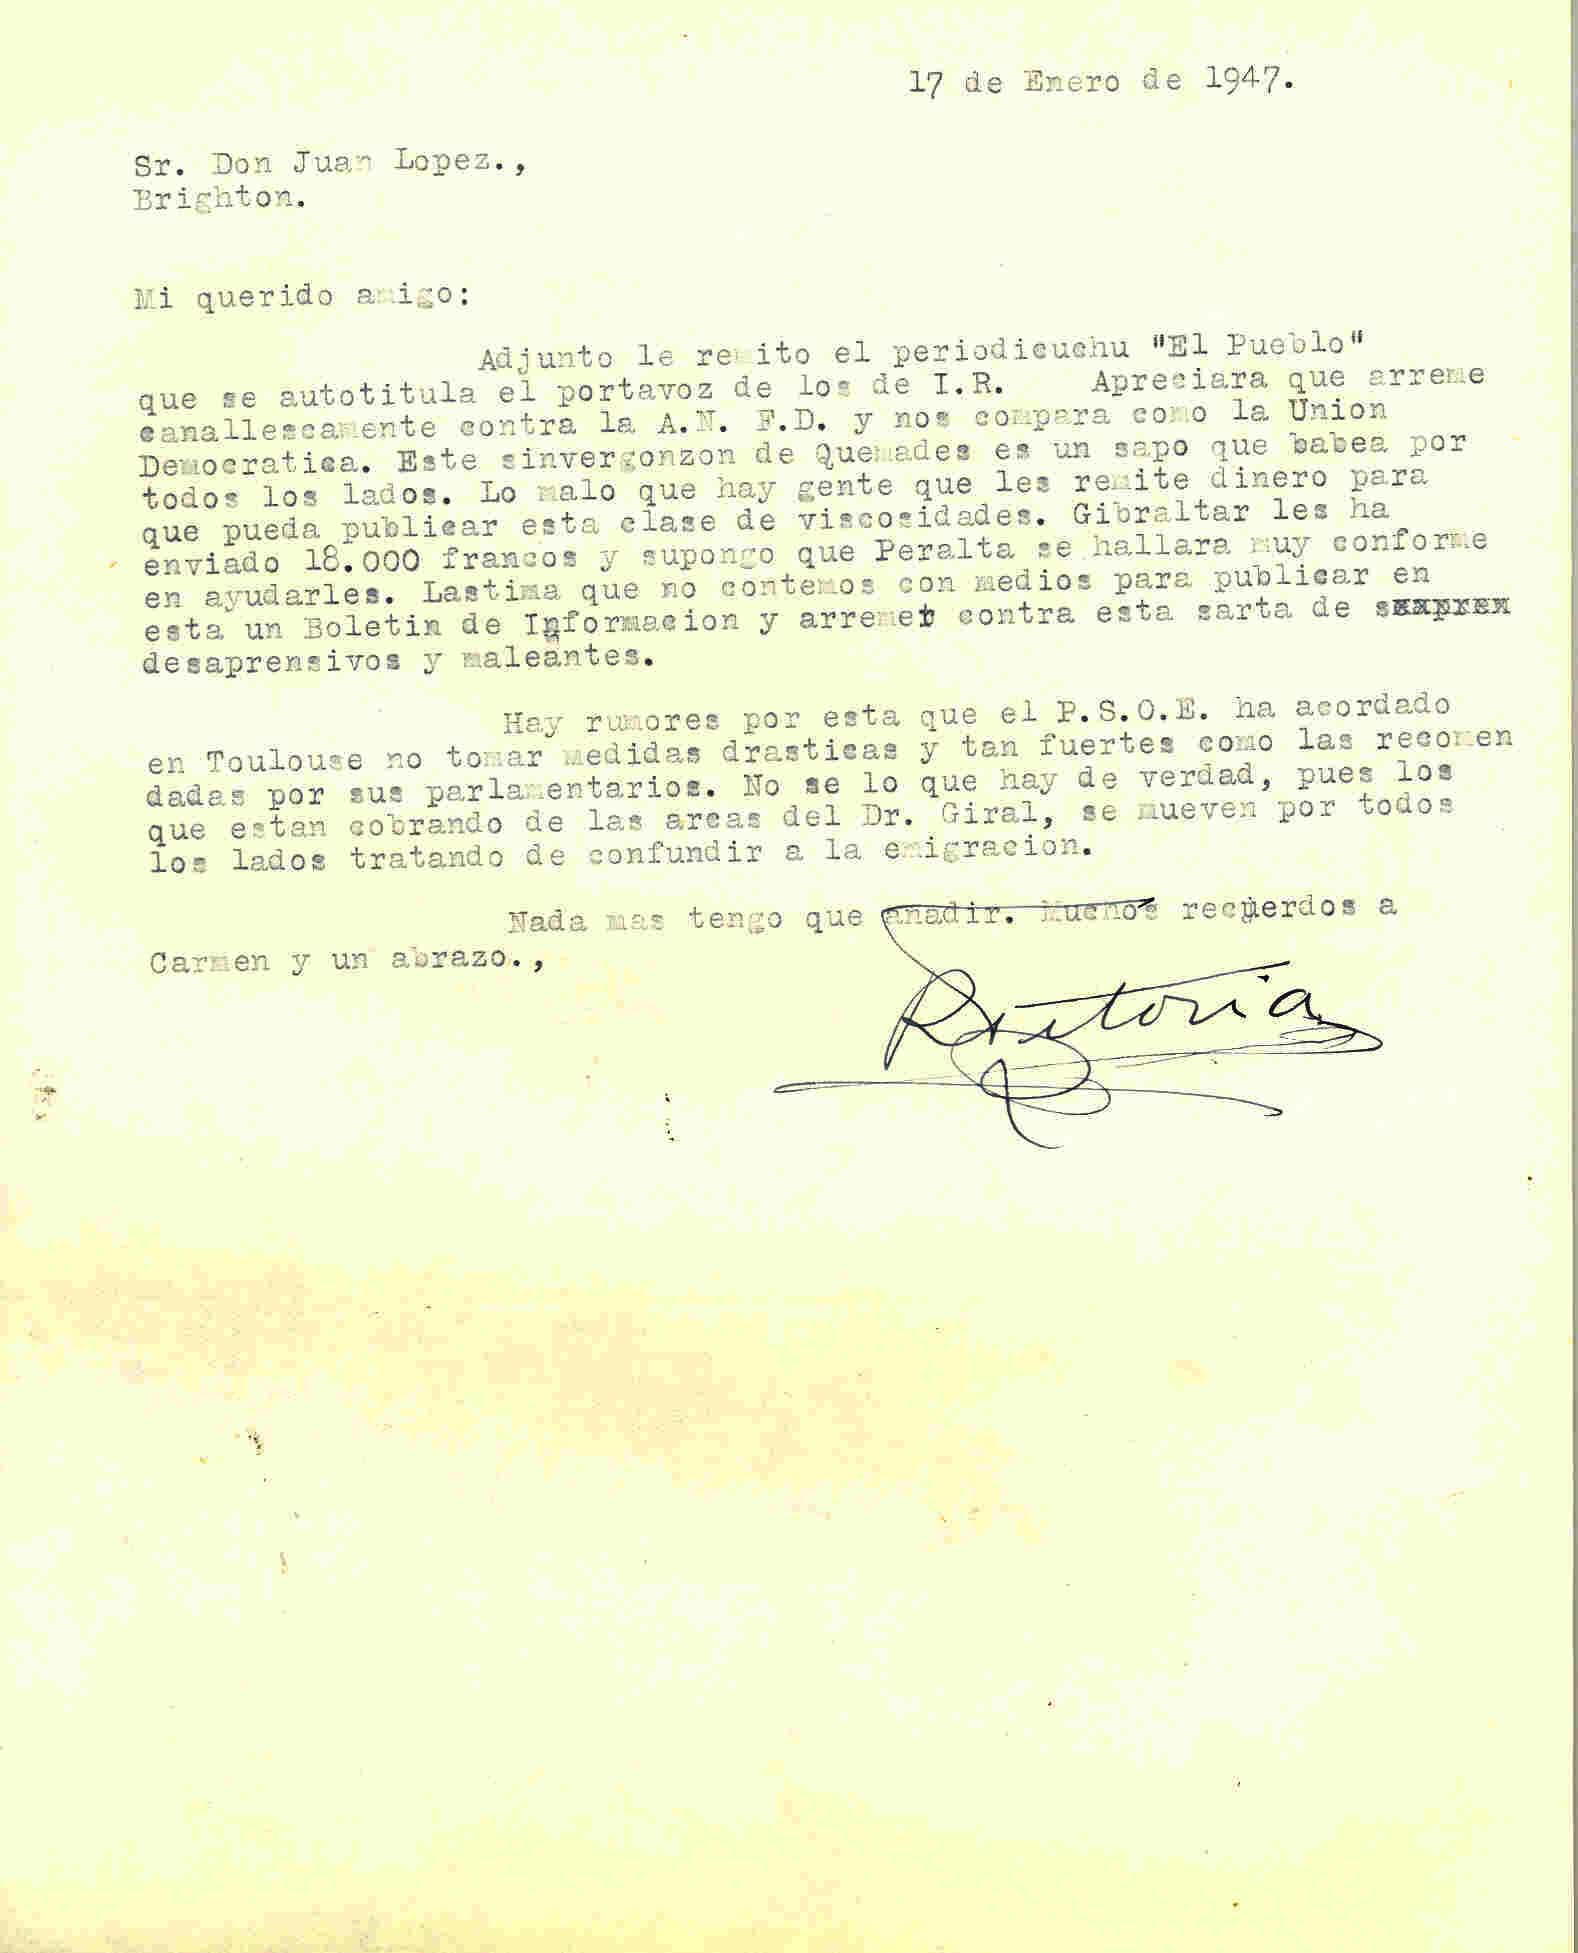 Carta de Roque Victoria con la que adjuntó el periódico El Pueblo en el que se meten con la Alianza Nacional de Fuerzas Democráticas.